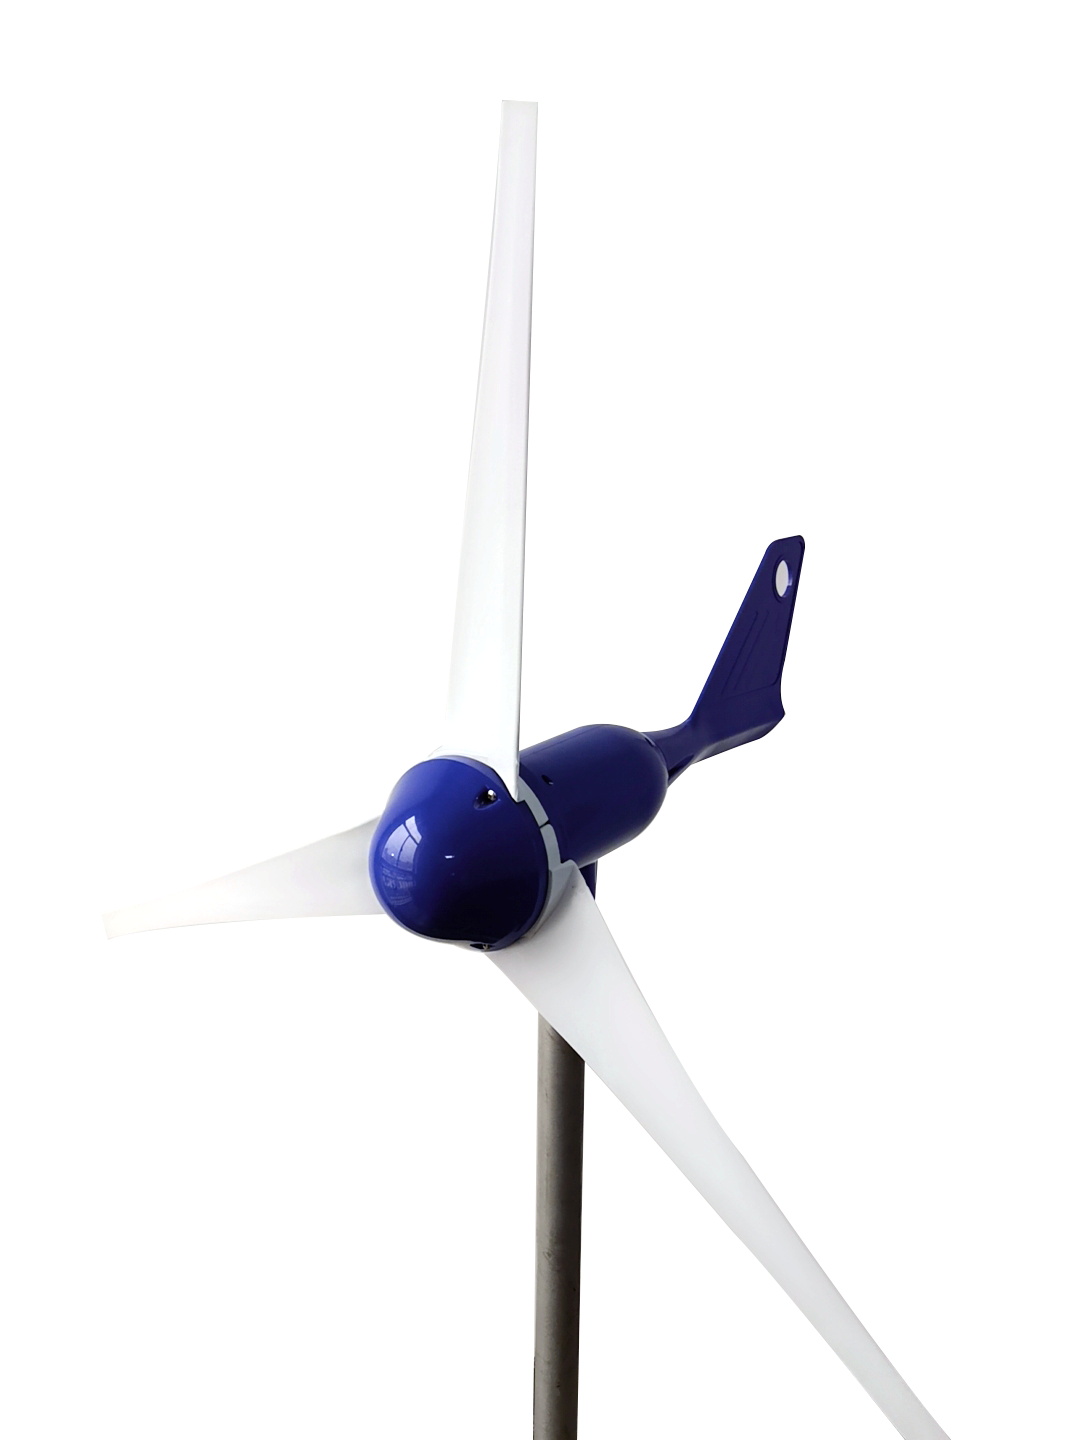 Wind turbine 300w3 blade full plastic